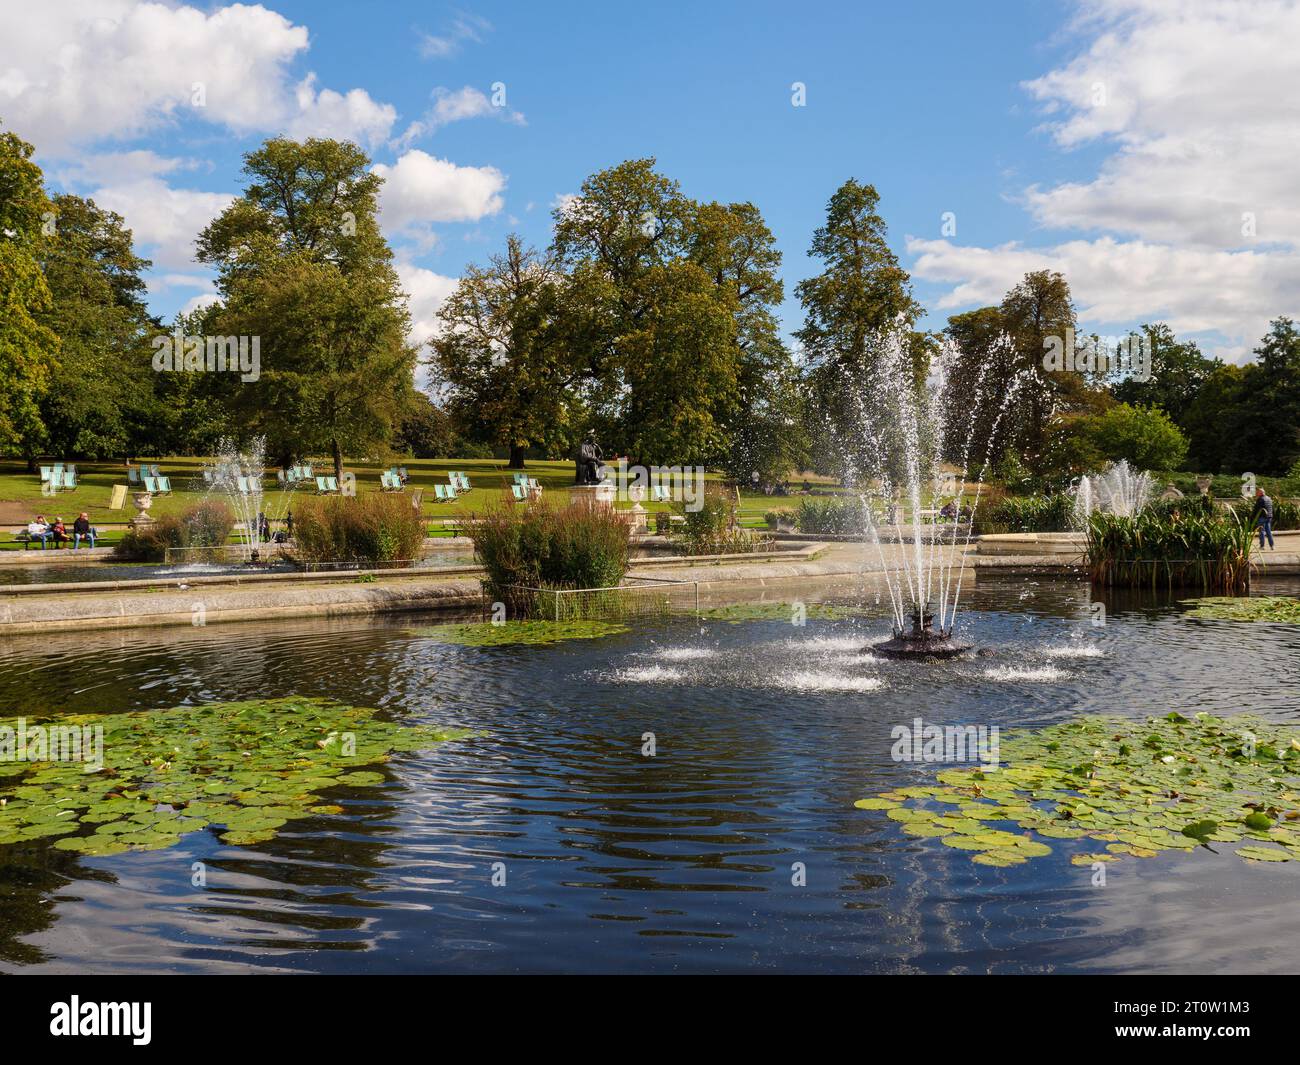 Ponds in the Italian Gardens in Kensington Gardens, London, UK Stock Photo